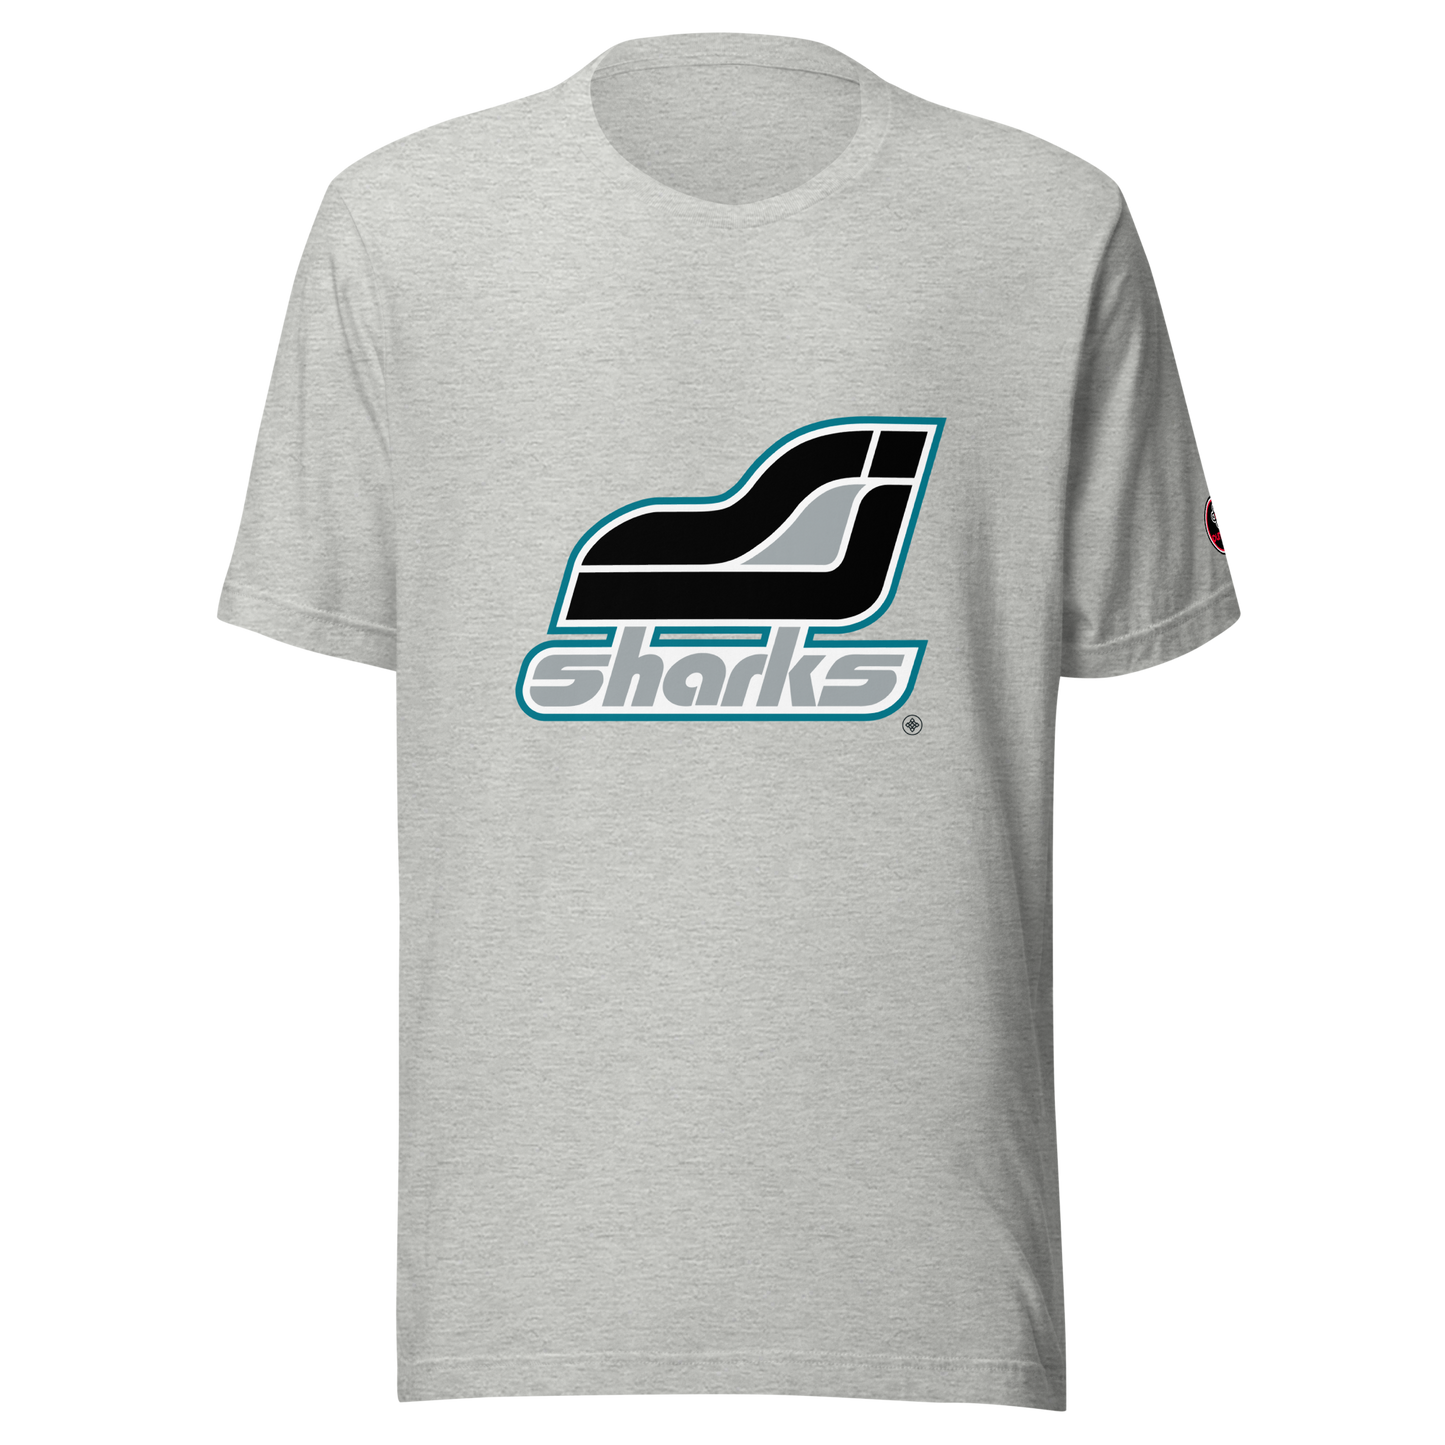 T-shirt classique unisexe ❯ Concept 70 ❯ Sharks